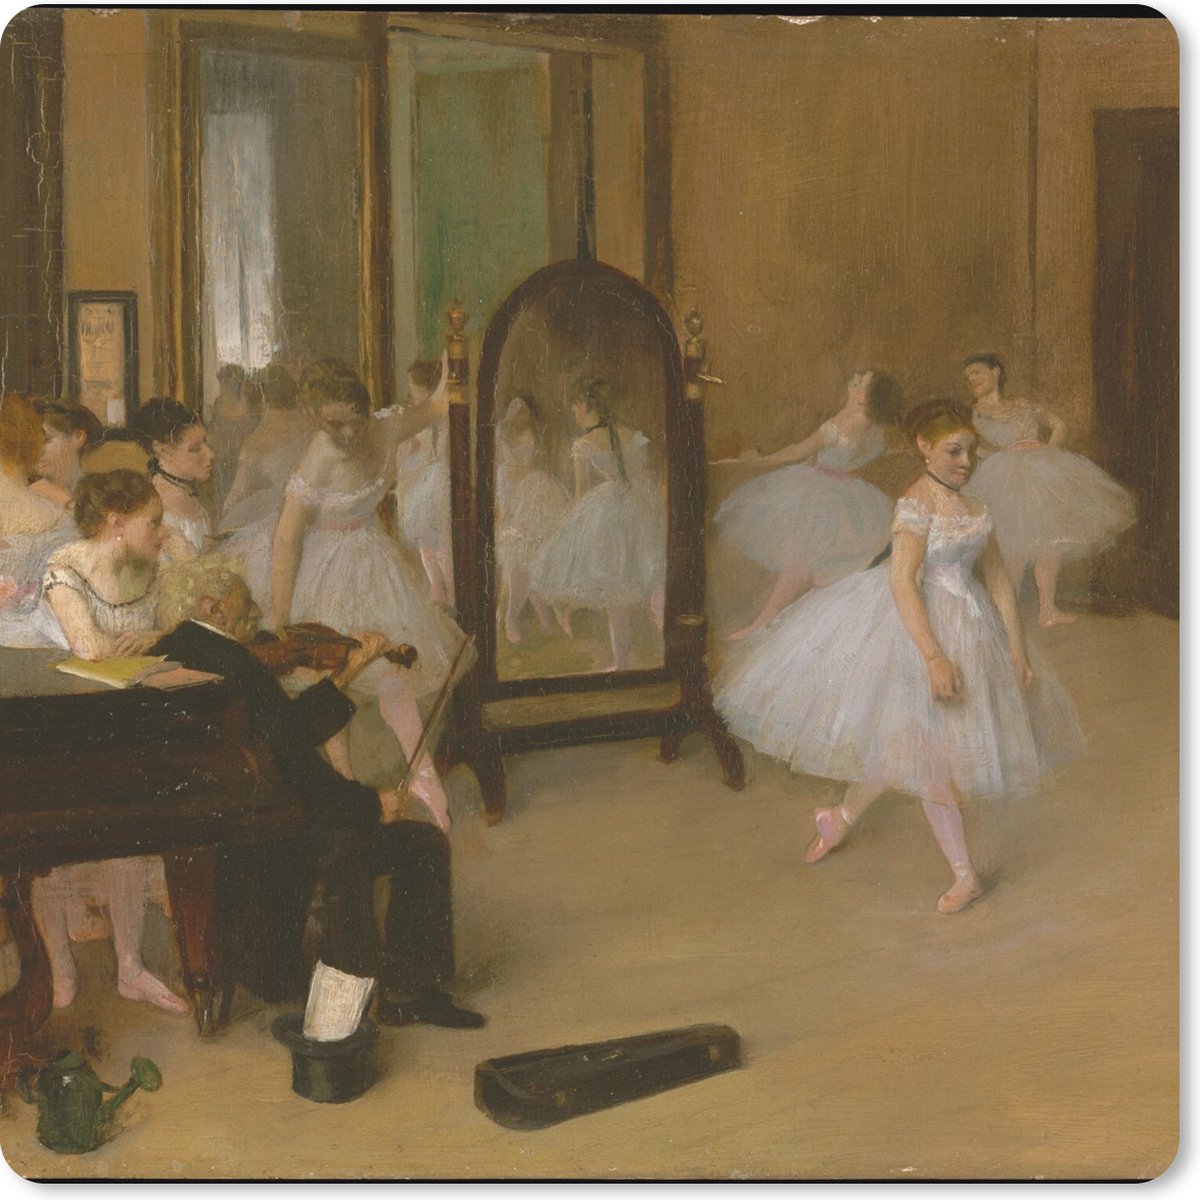 Muismat XXL - Bureau onderlegger - Bureau mat - The Dancing Class - Schilderij van Edgar Degas - 50x50 cm - XXL muismat